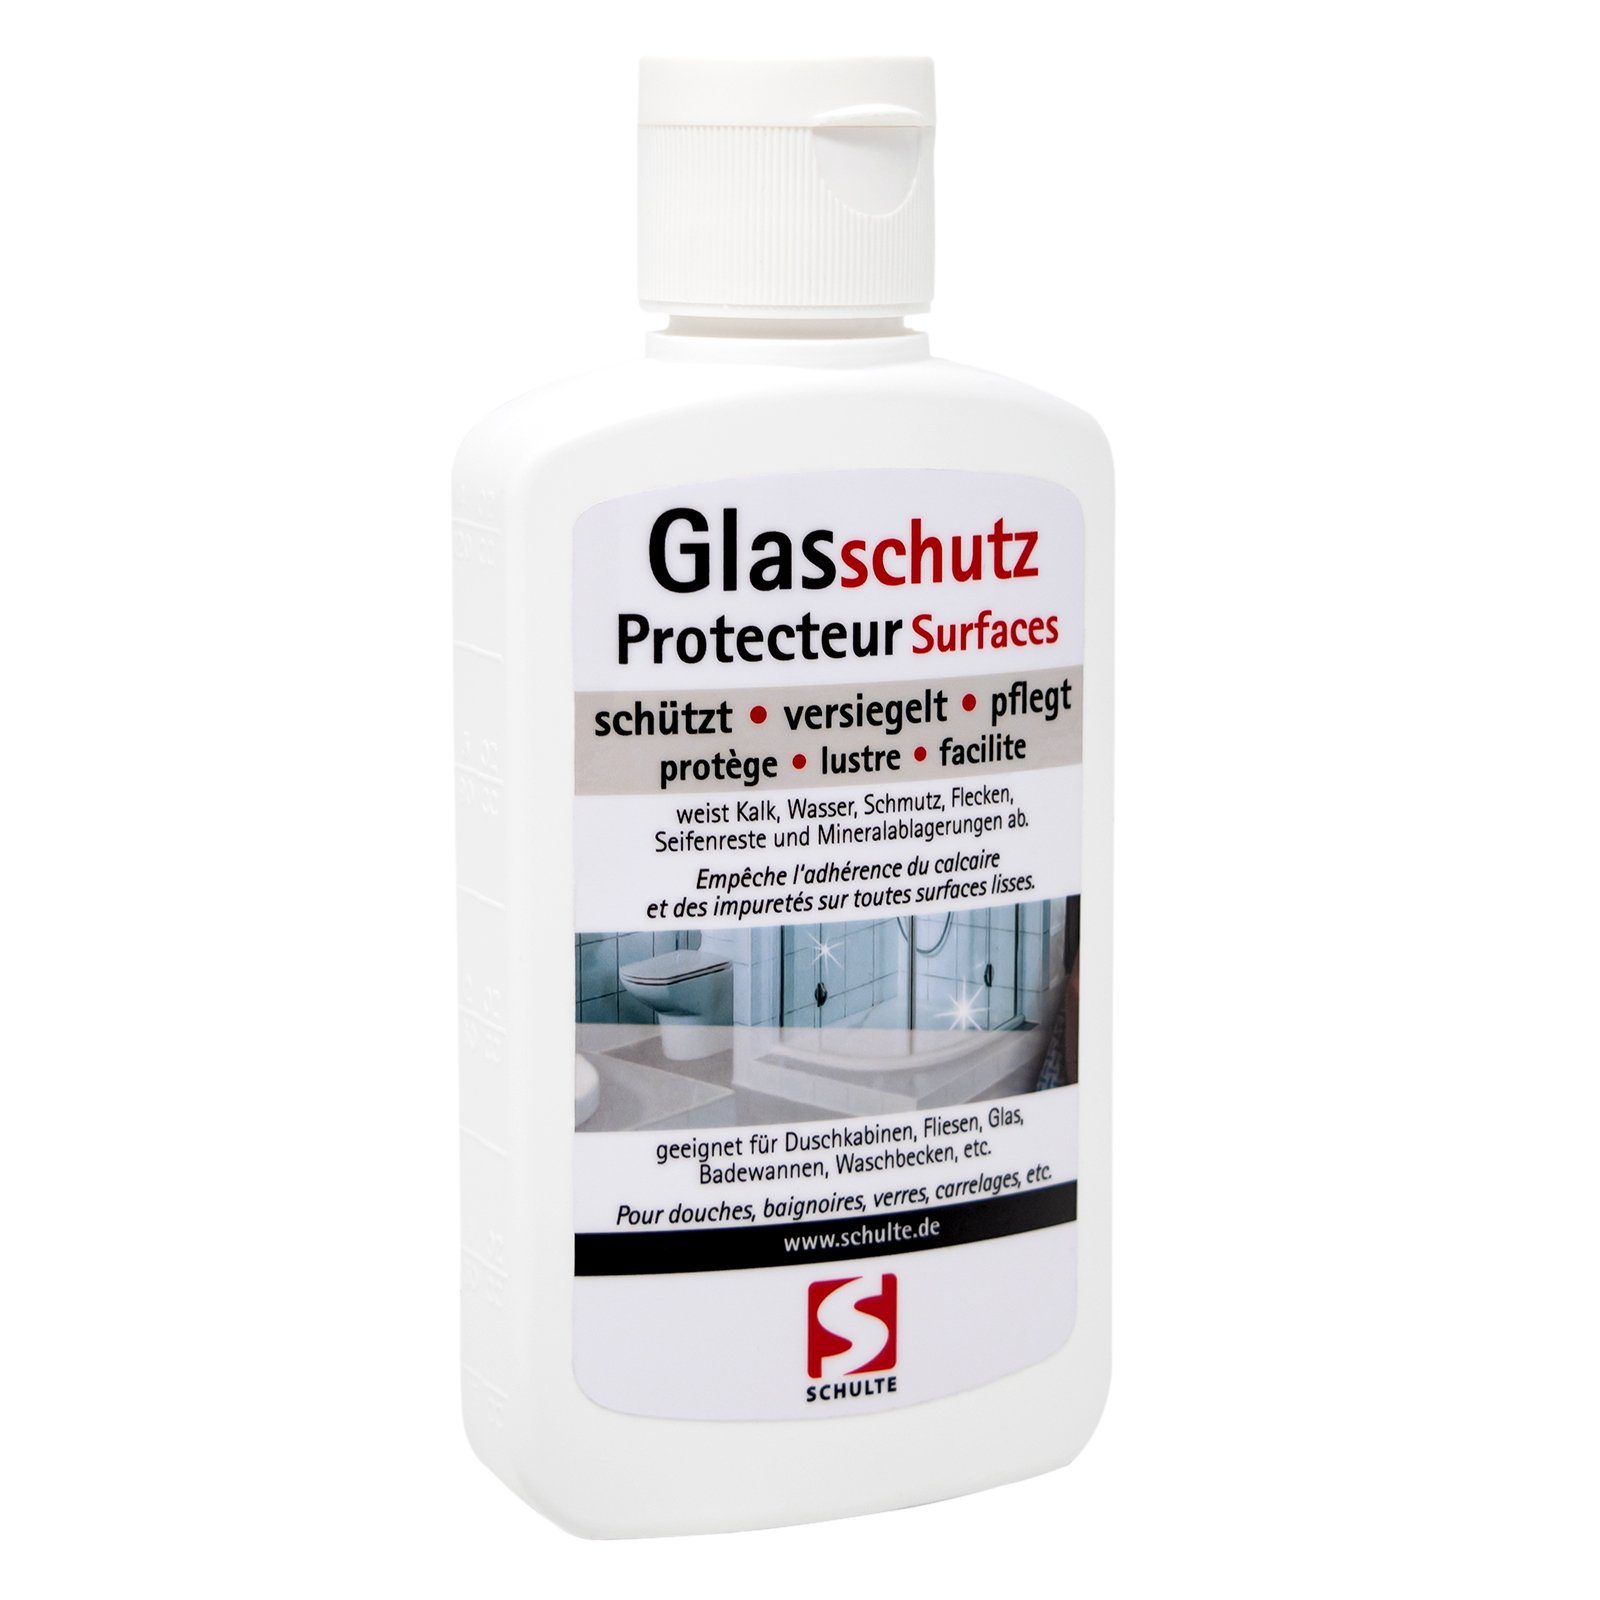 Schulte Glasschutz zur Versiegelung und Pflege von Duschkabinen aus Echtglas Duschkabinenreiniger (100ml) | Badreiniger